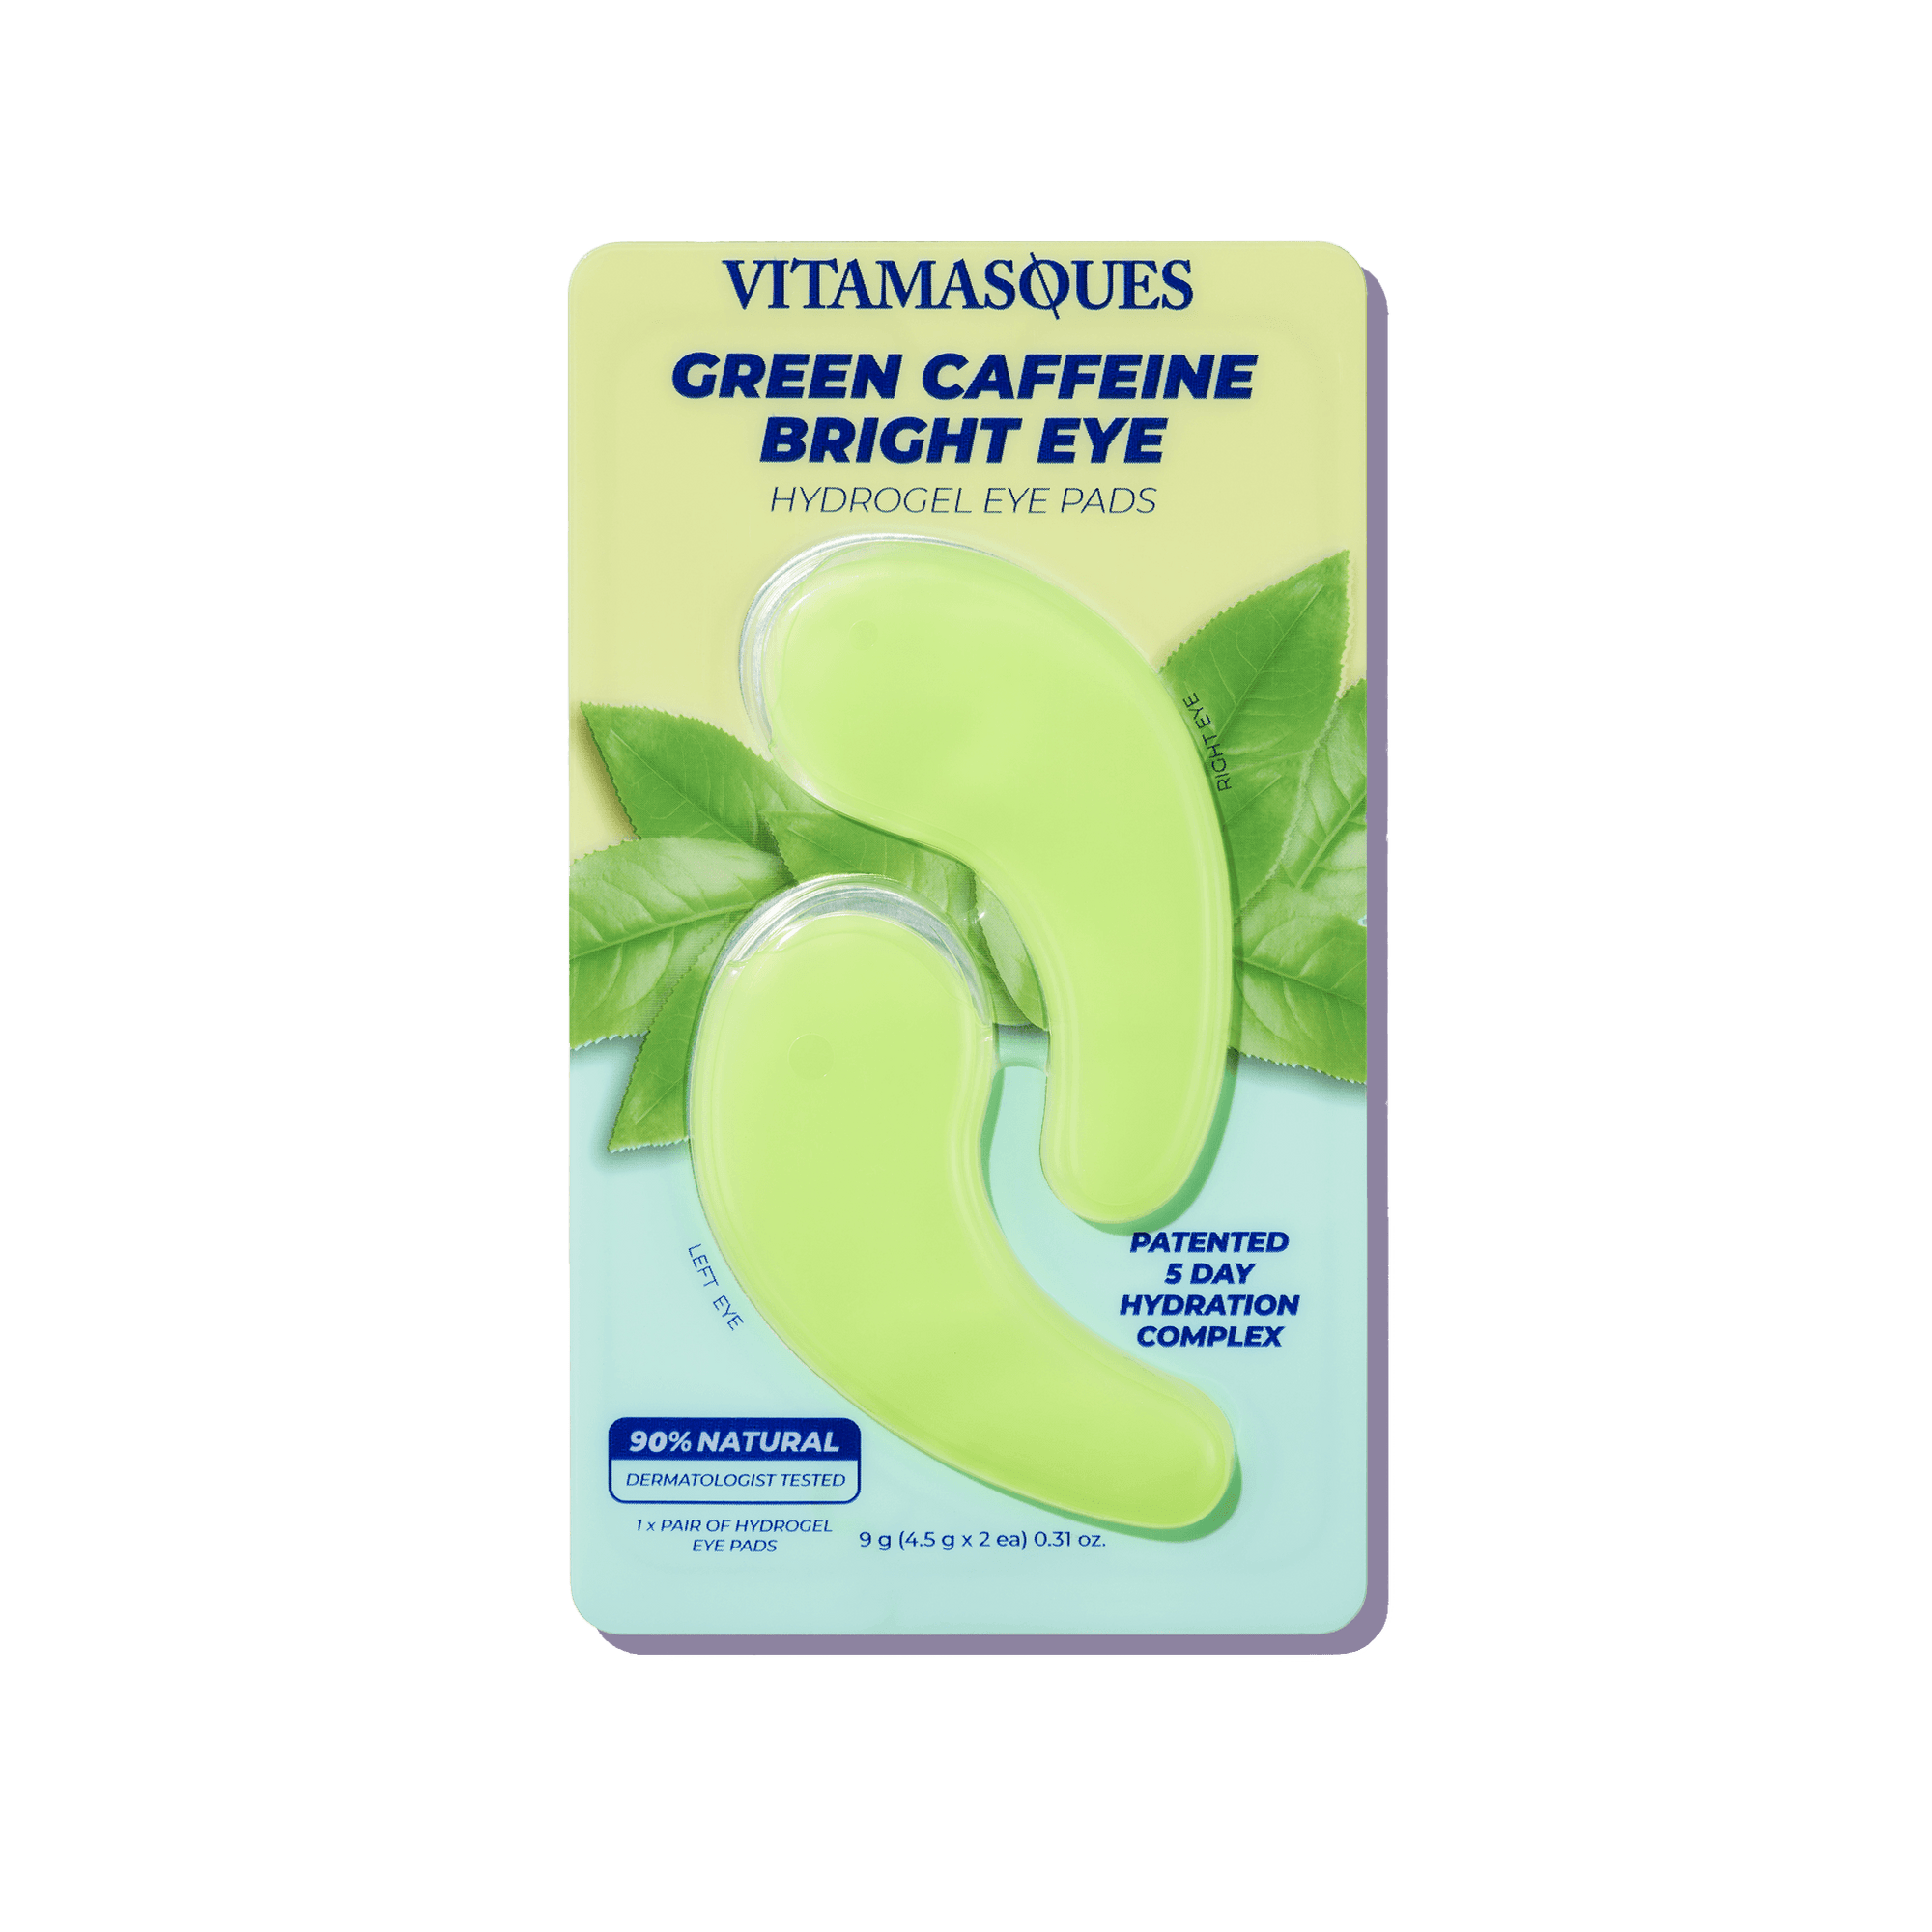 Bright Eye Green Caffeine Hydrogel Eye Pads - Vitamasques